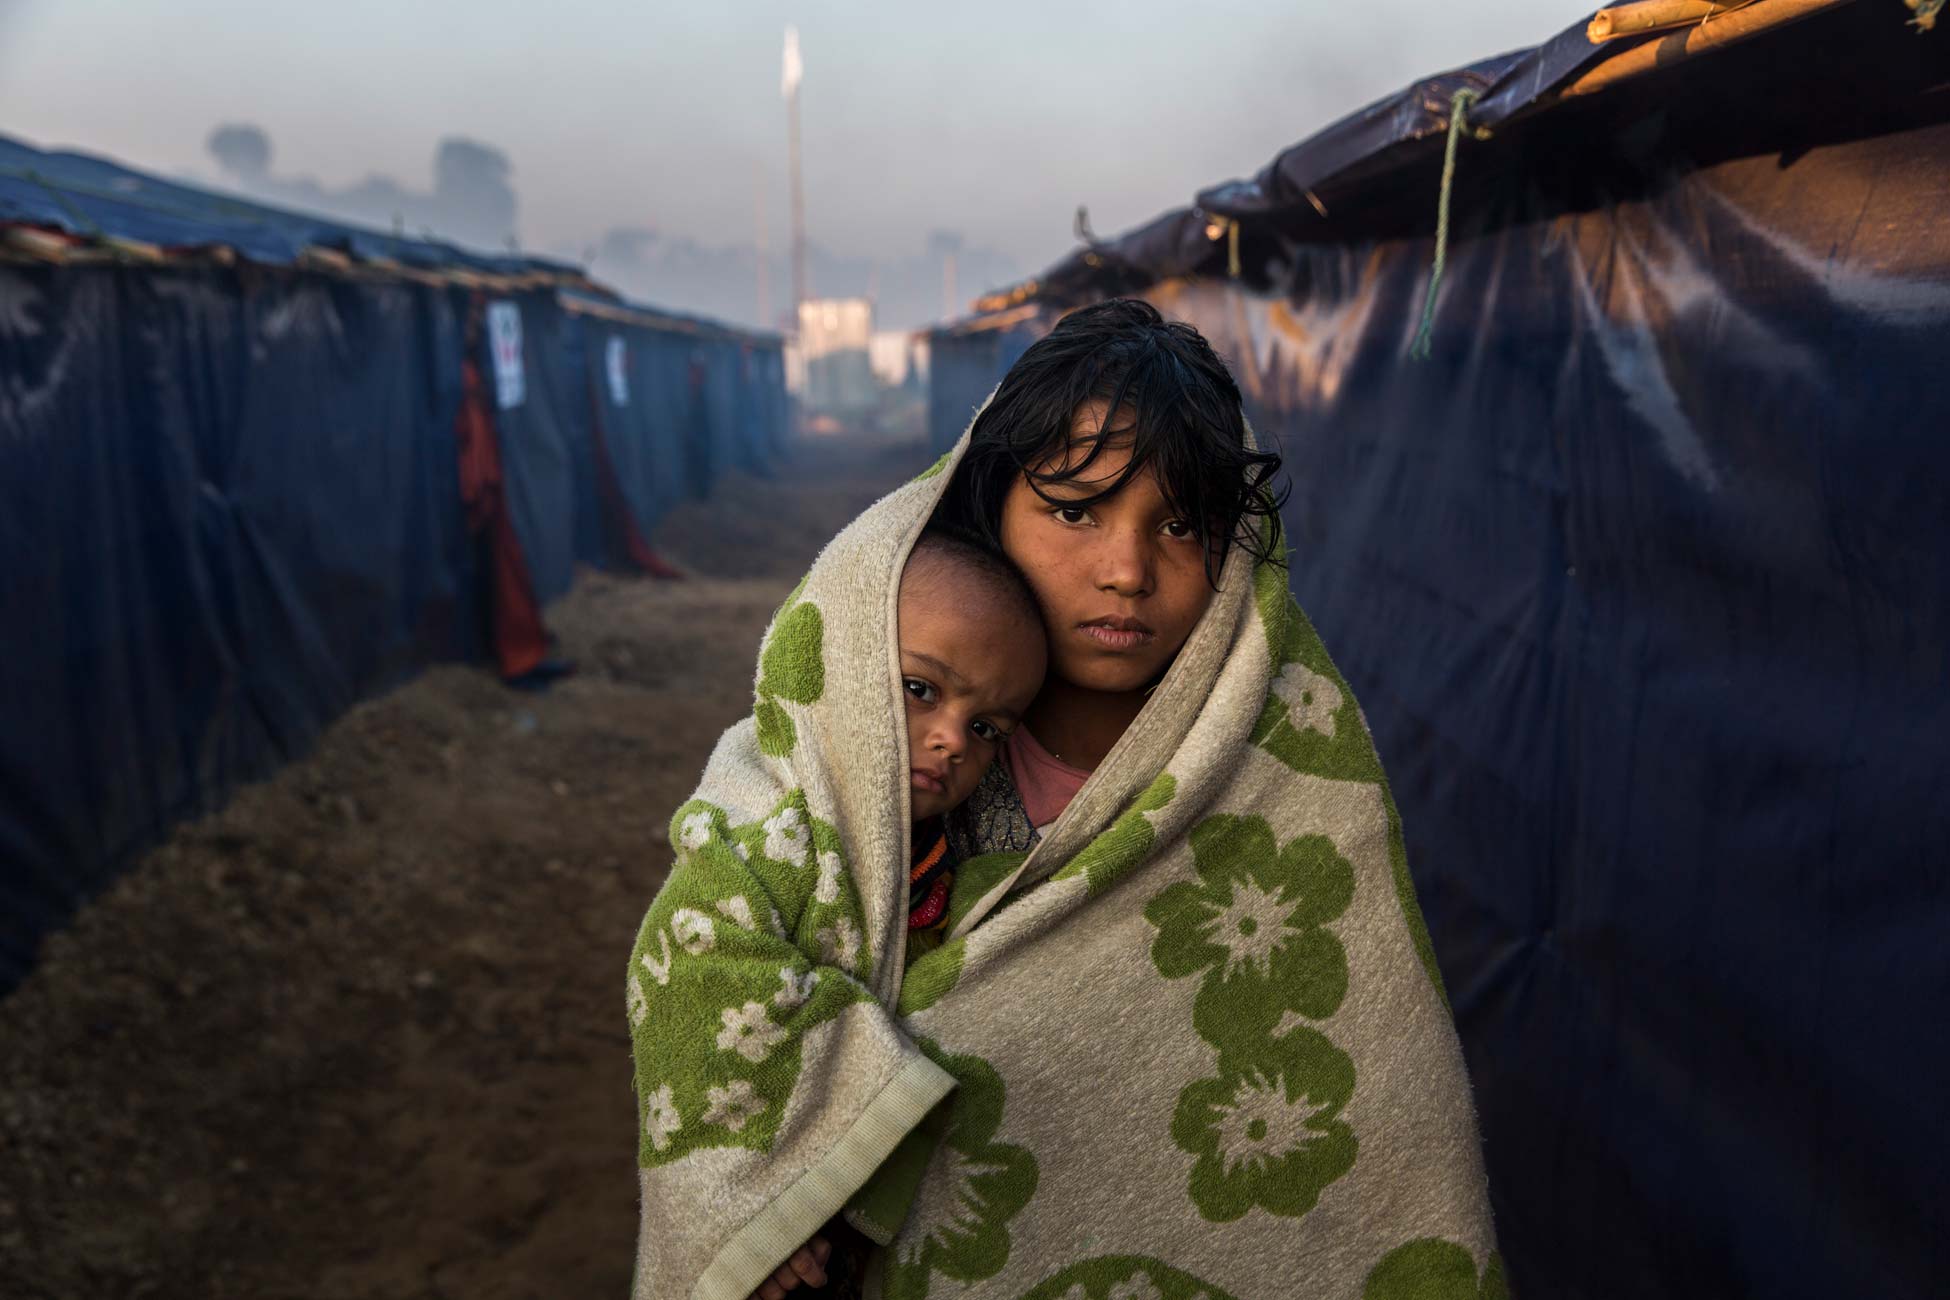 Morsheda, 12, und ihre 10 Monate alte Nichte Nisma gehen am frühen Morgen im Lager Kutupalong in Bangladesch spazieren, um sich von der Kälte in ihrer Unterkunft aufzuwärmen.